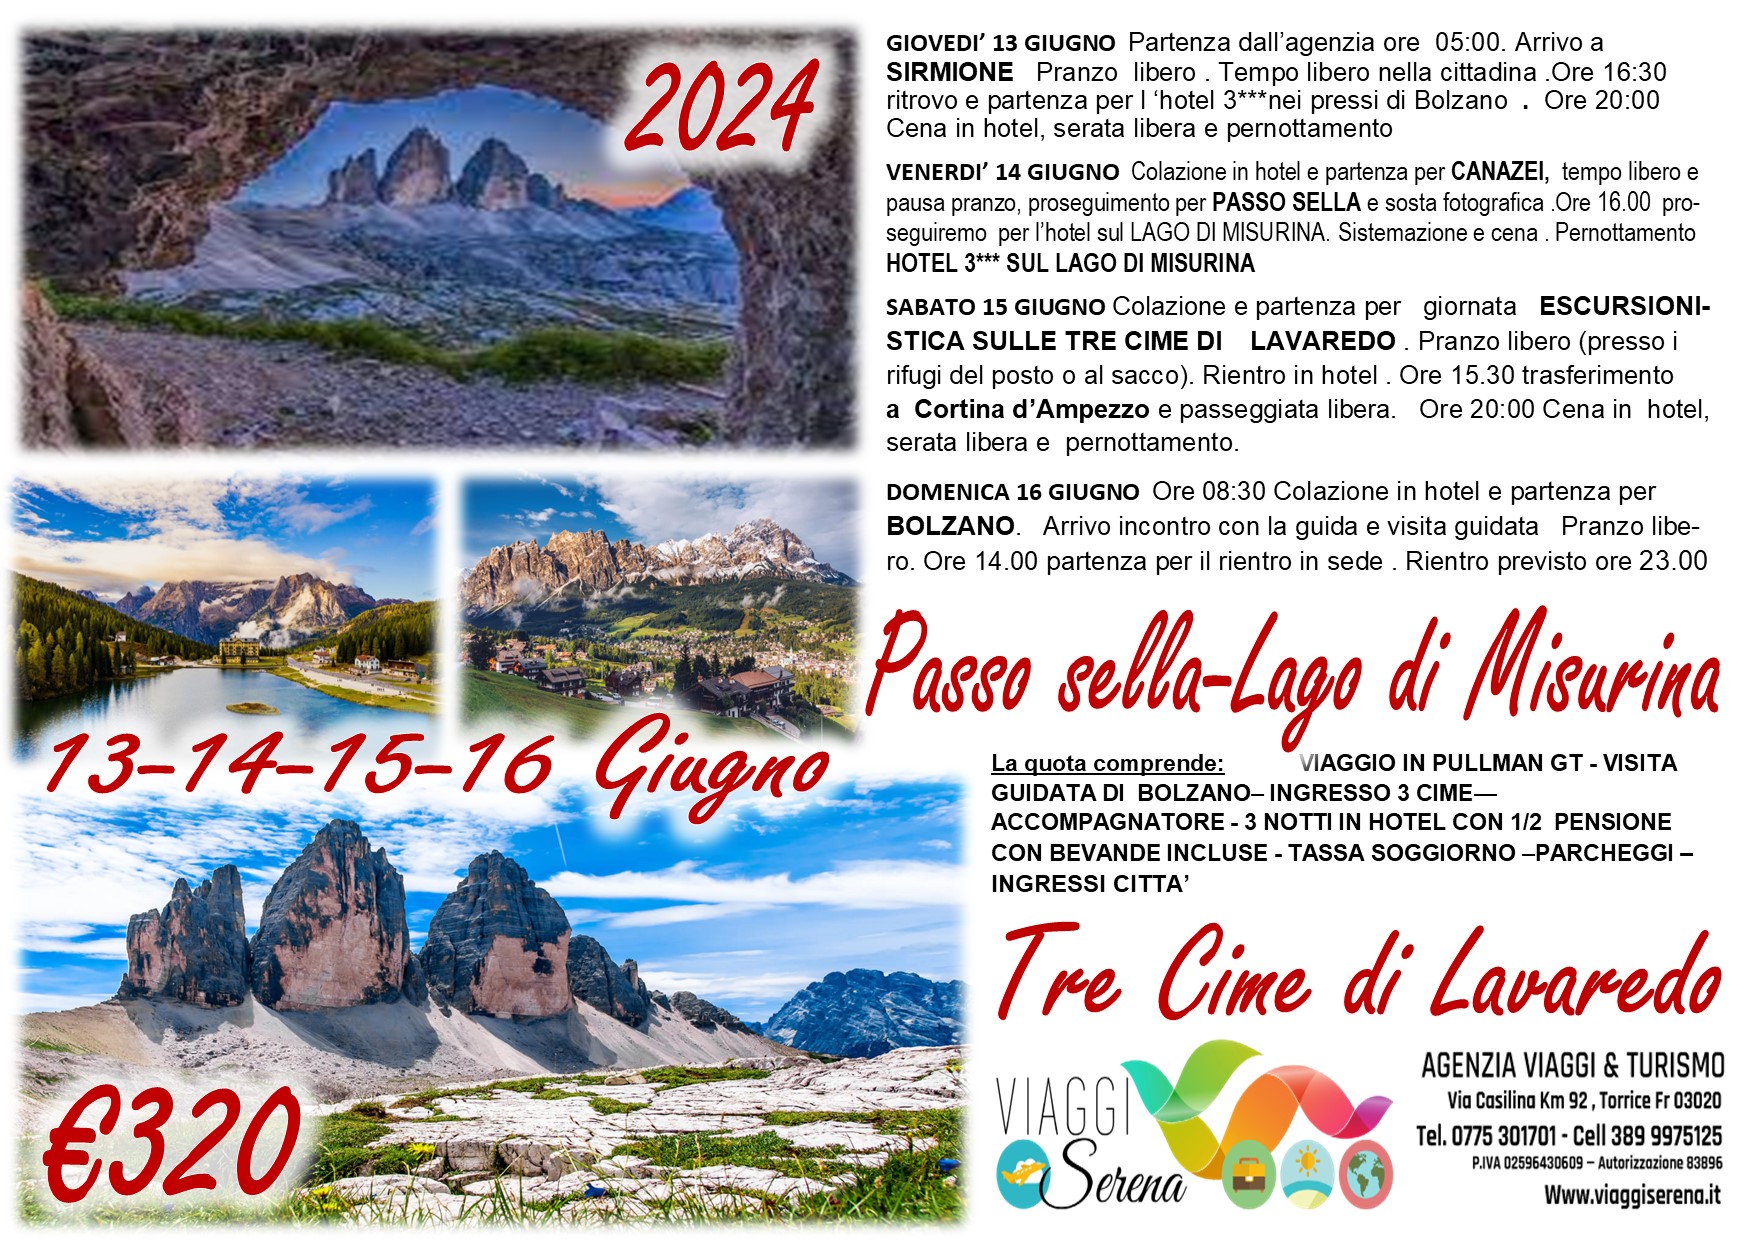 Viaggi di gruppo: Tre Cime di Lavaredo, Passo Sella, Lago di Misurina, Cortina d’Ampezzo 13-14-15-16 Giugno €320,00